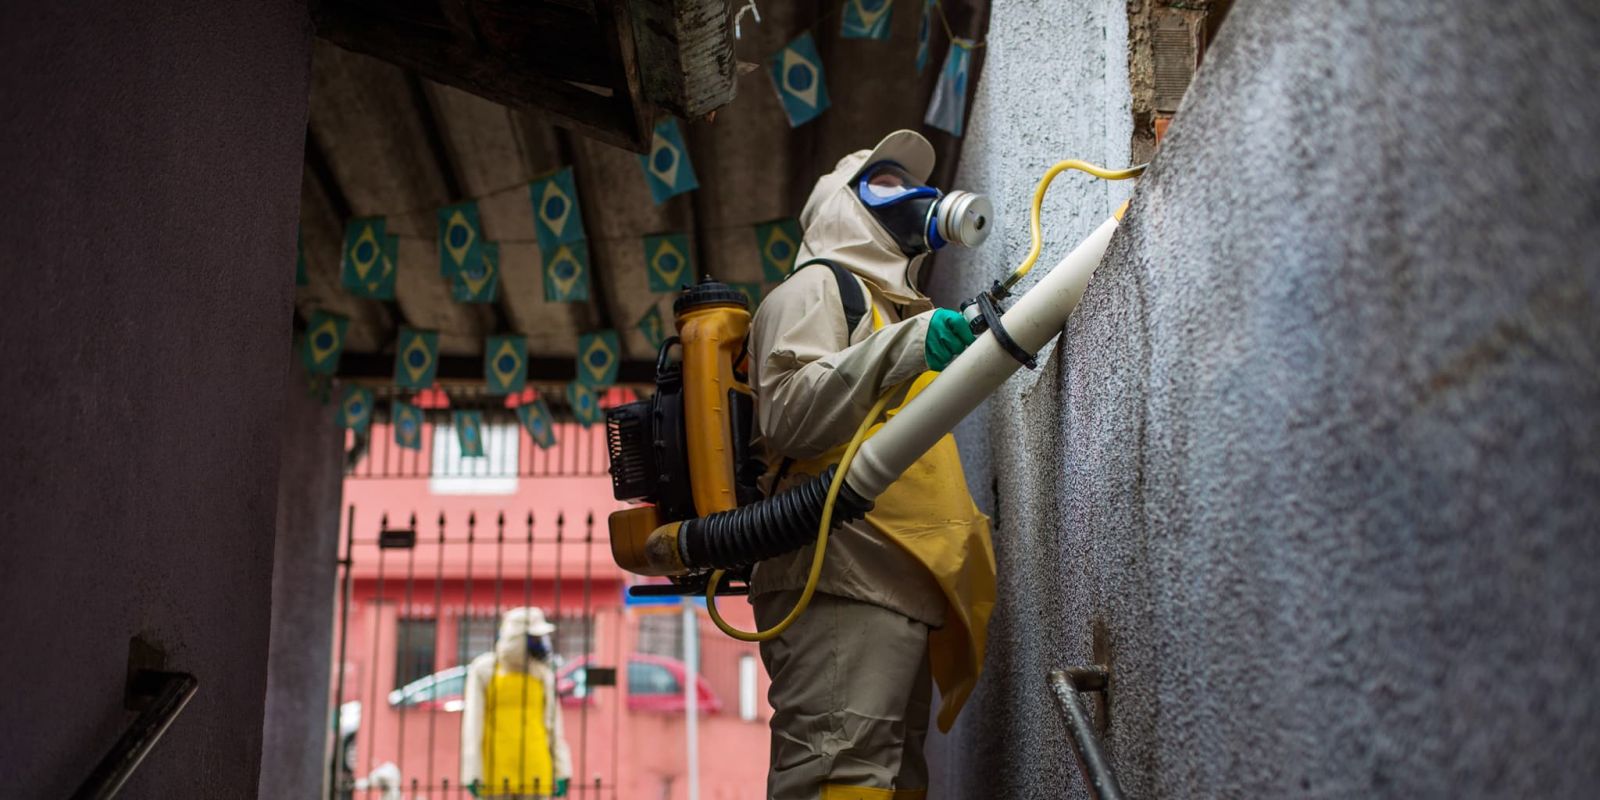 即將舉辦奧運的巴西里約熱內盧正致力撲滅茲卡病媒蚊。